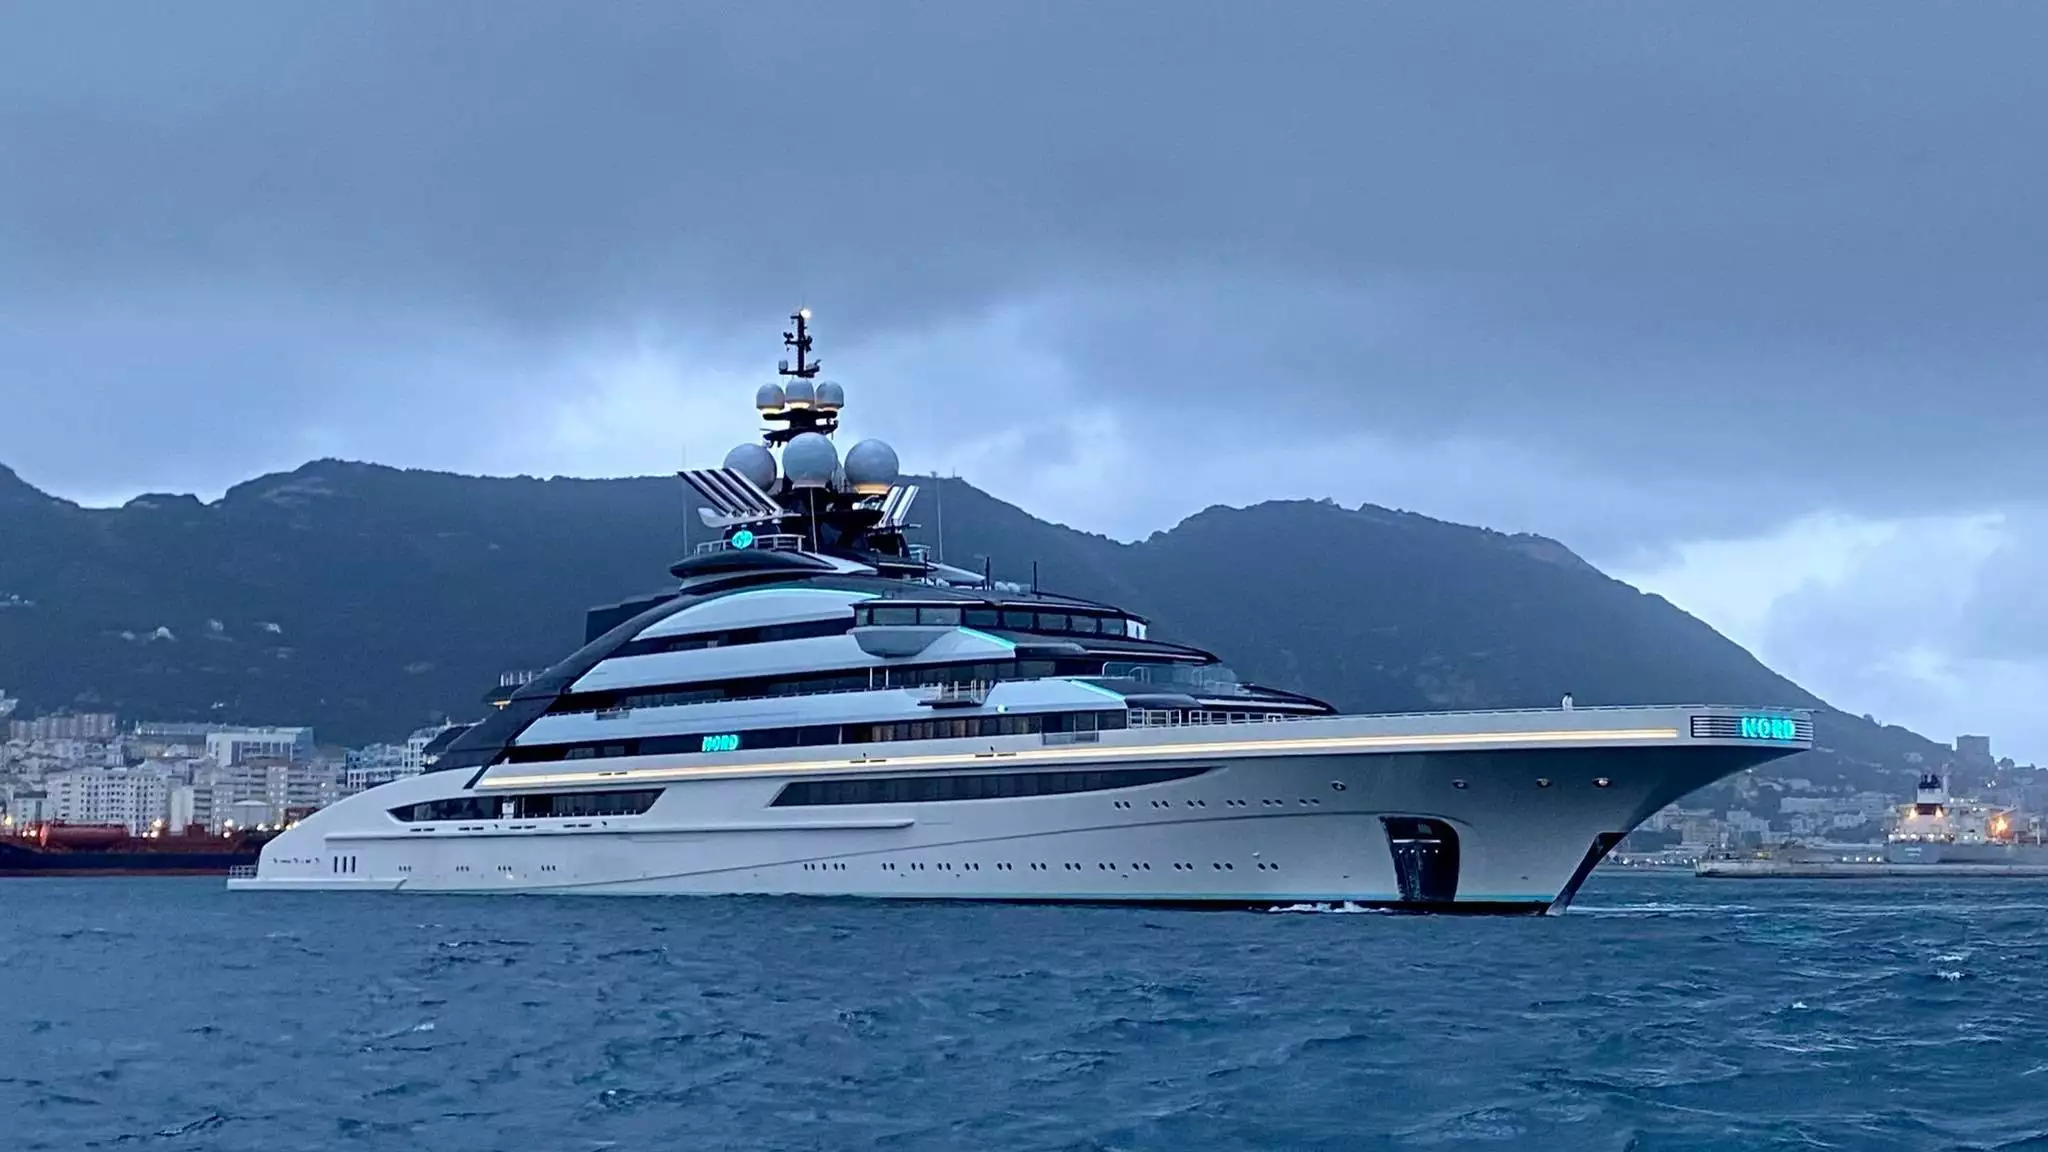 yacht a motore Nord – Lurssen – 2021 – Alexei Mordashov 